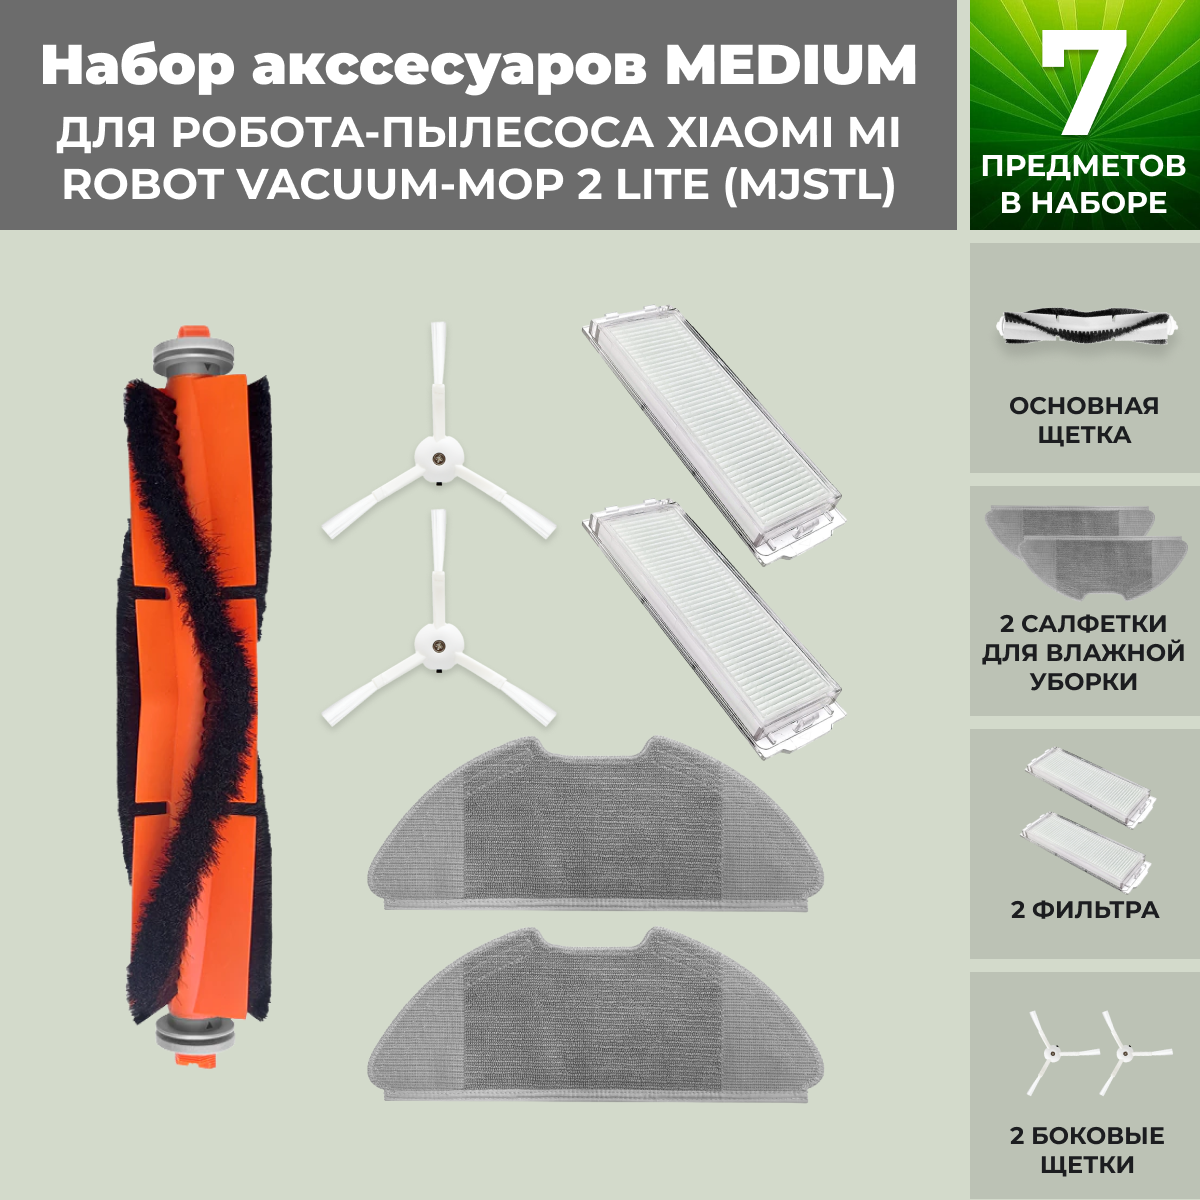 Набор аксессуаров Medium для робота-пылесоса Xiaomi Mi Robot Vacuum-Mop 2 Lite (MJSTL), белые боковые щетки, фото 1